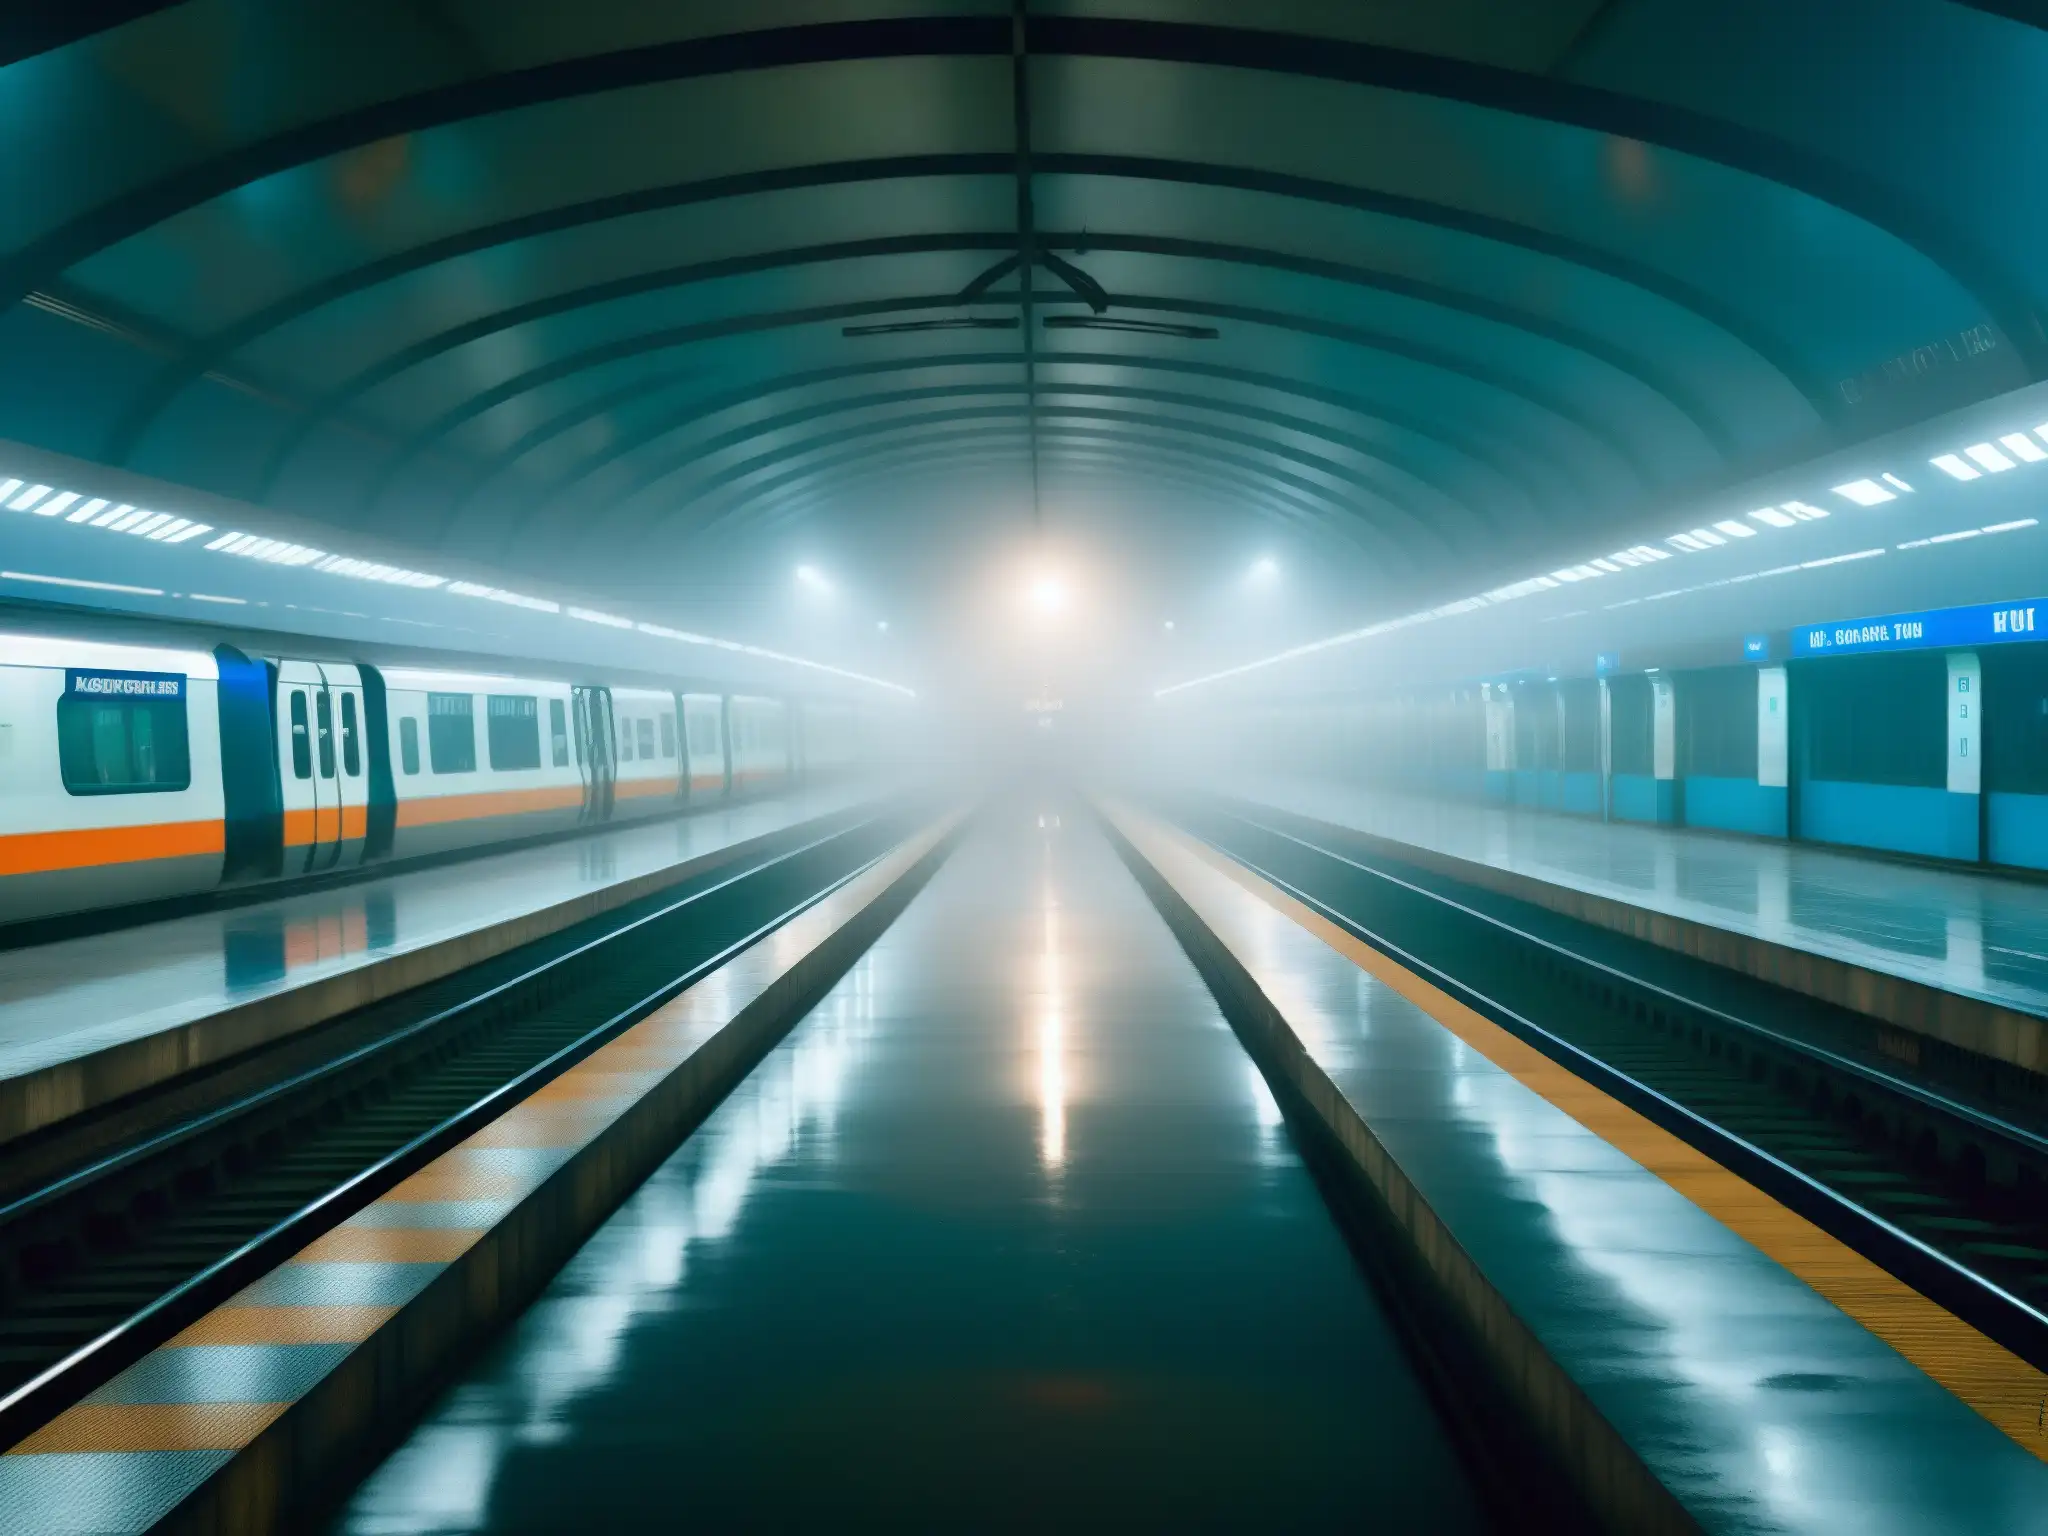 Voces de Rabindra Sarobar Metro: estación vacía, misteriosa niebla y reflejos distorsionados en el agua